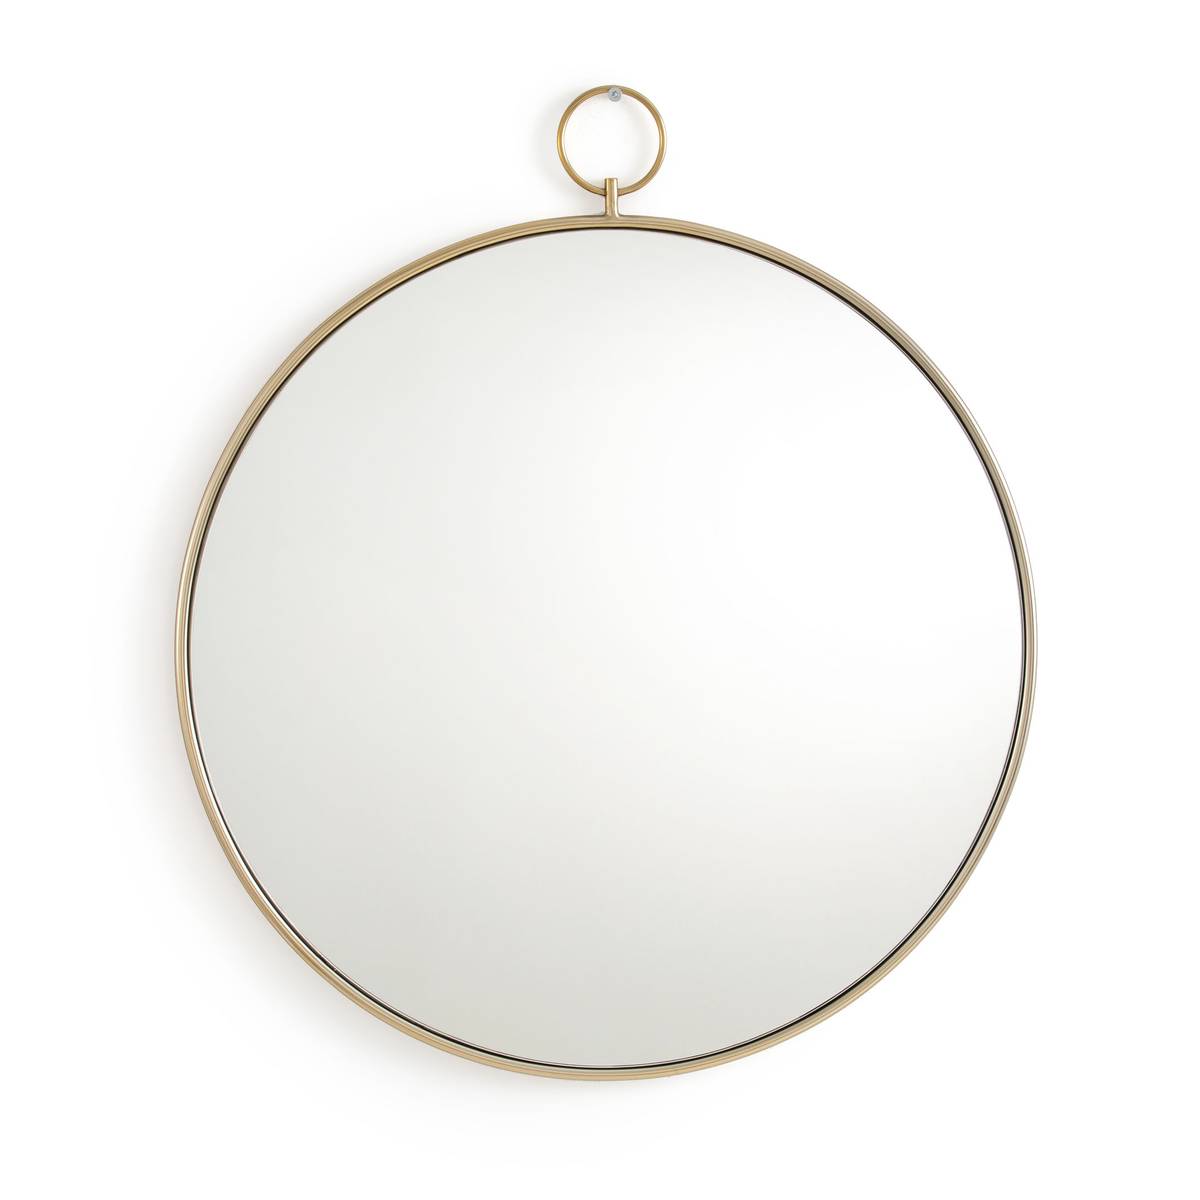 Зеркало круглое из латуни Uyova 13 909 руб.